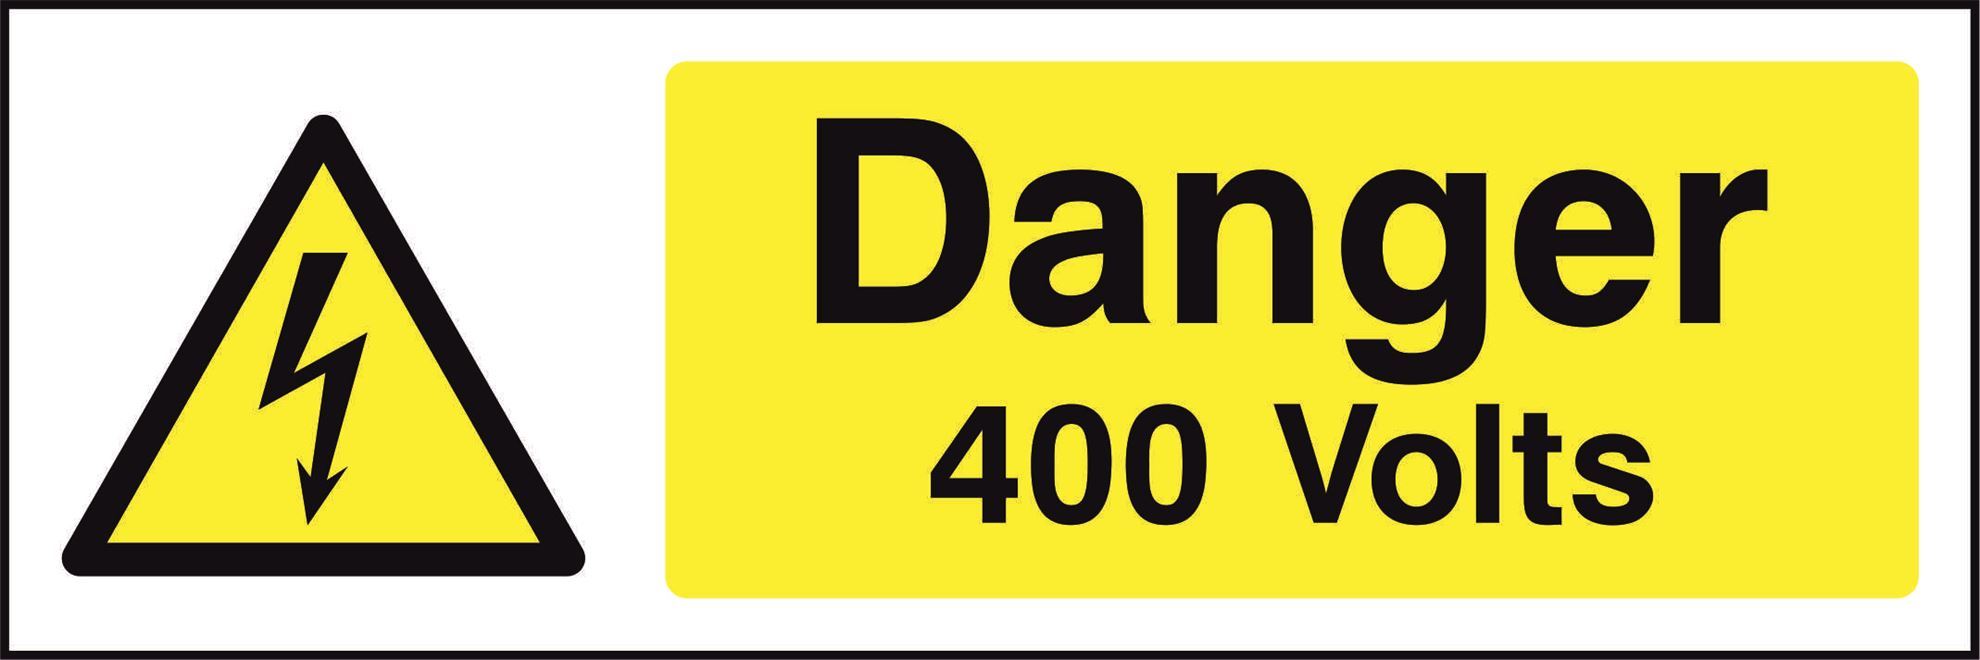 Danger 400 Volts